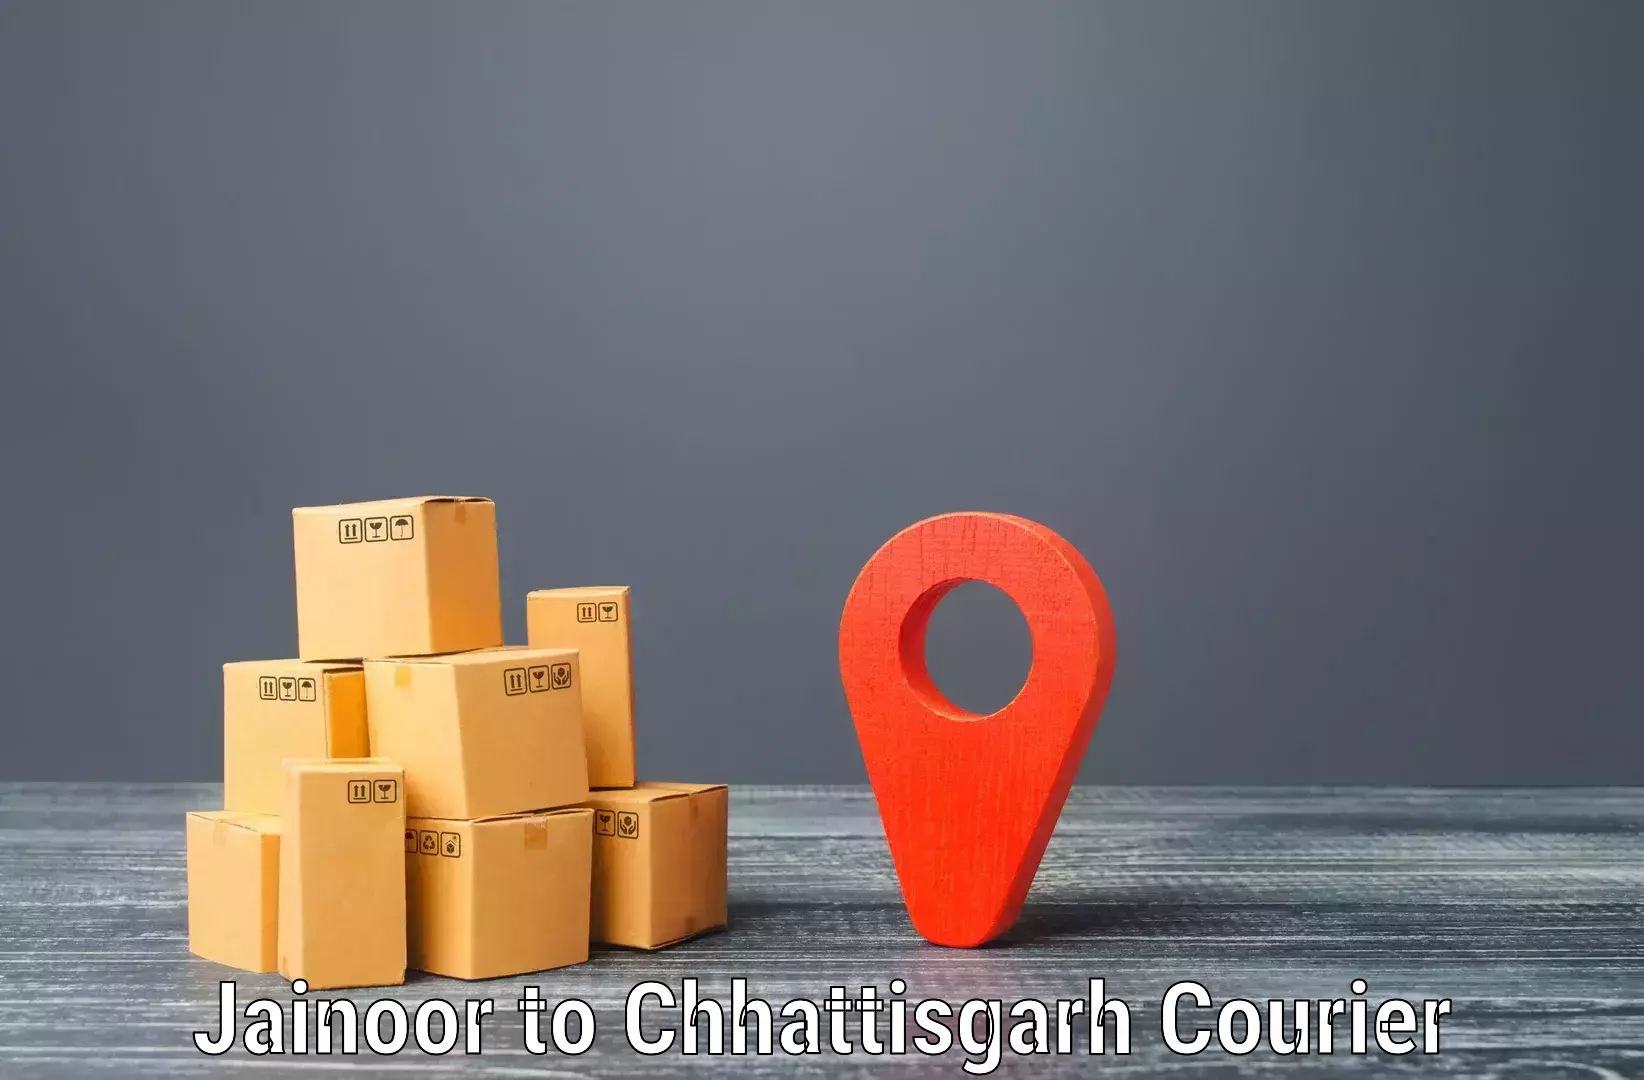 High-priority parcel service Jainoor to Ramanujganj